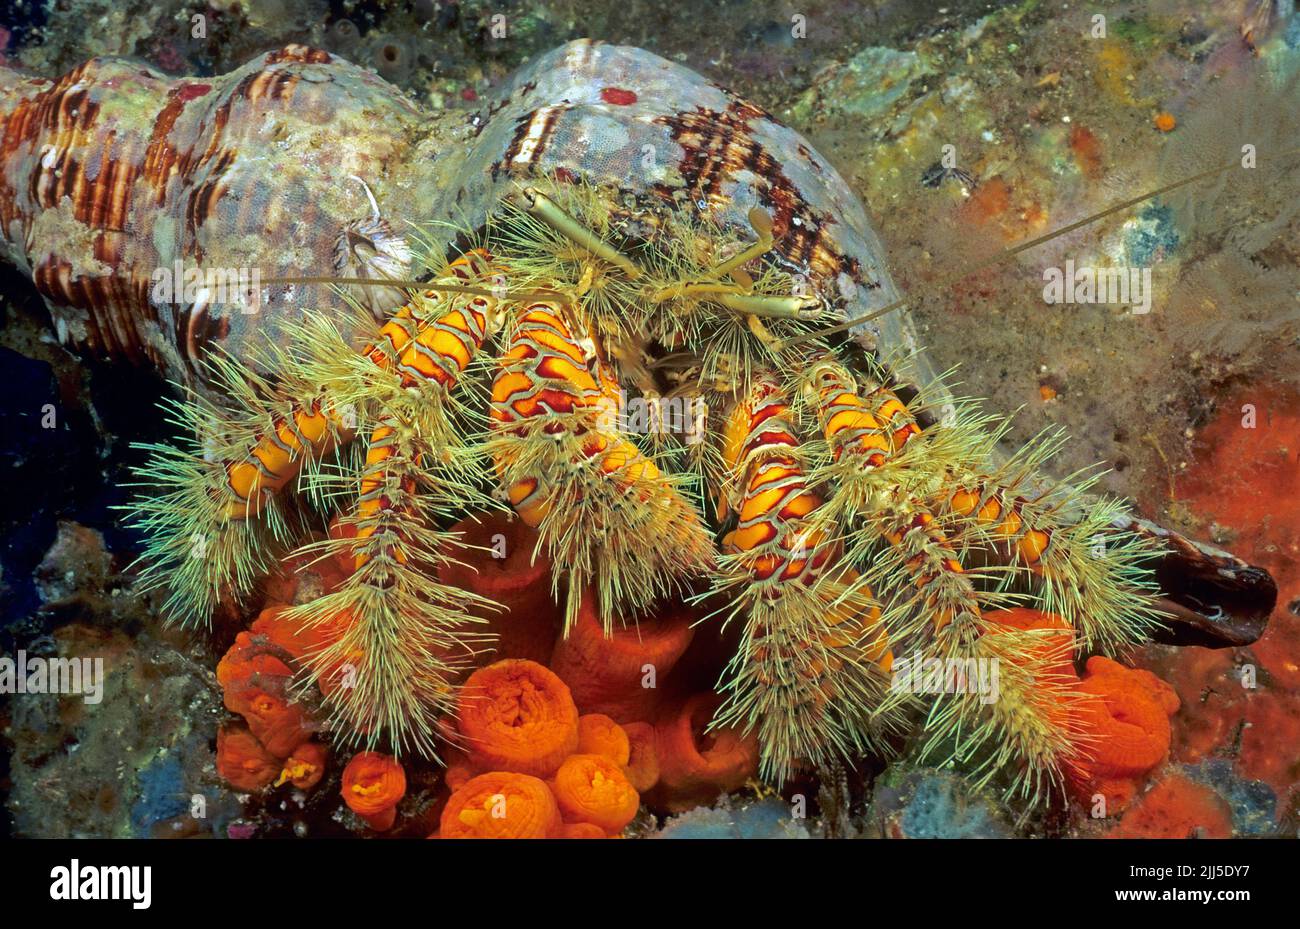 Granchio eremita giallo peloso o granchio eremita peloso grande (Aniculus maximus) in una barriera corallina, Mare delle Andamane, Thailandia, Asia Foto Stock